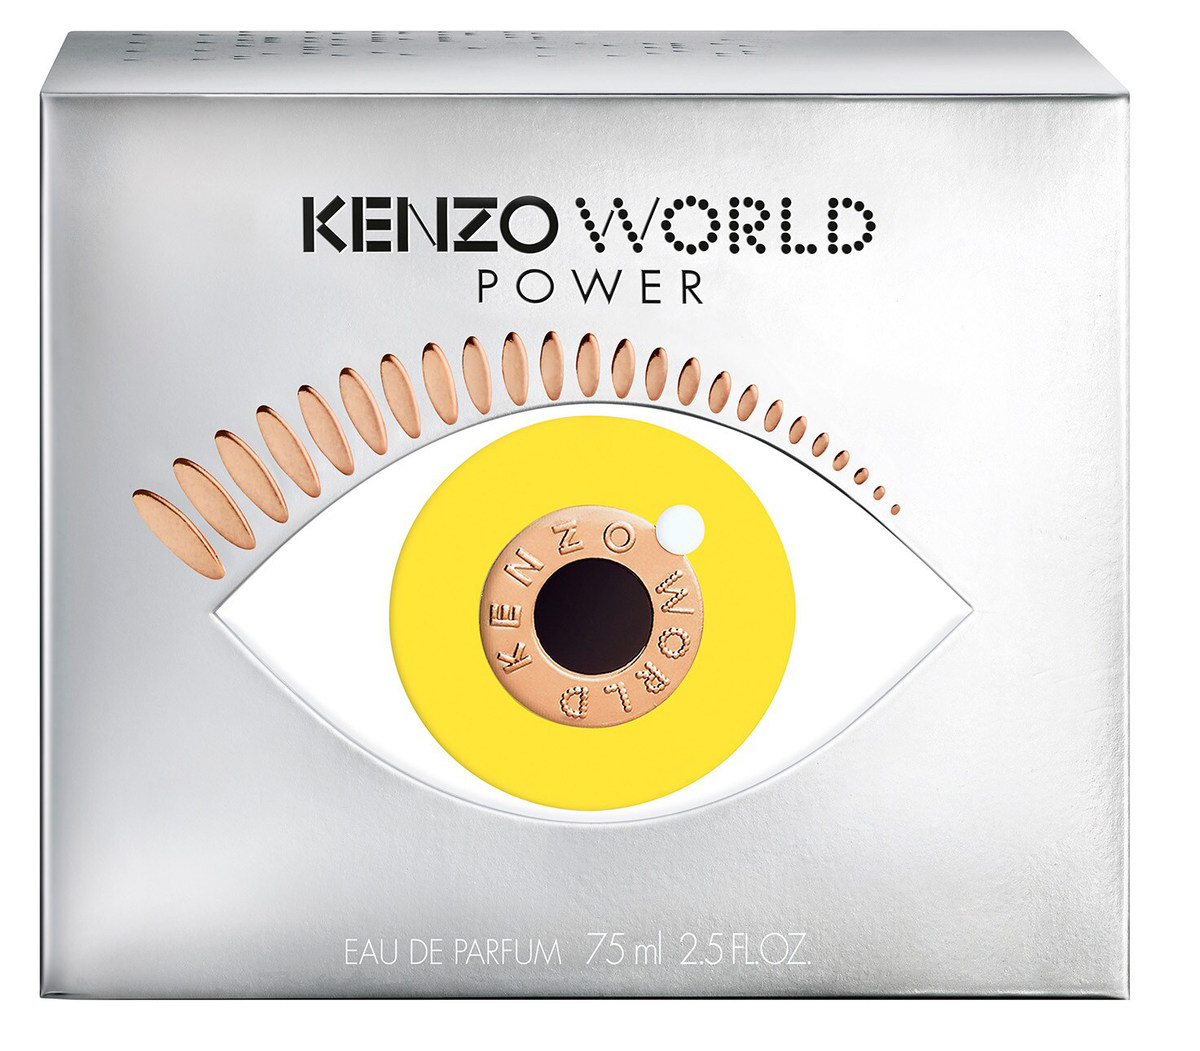 Kenzo - World Power Eau de » Facts (Eau Parfum de Reviews Perfume & Parfum)